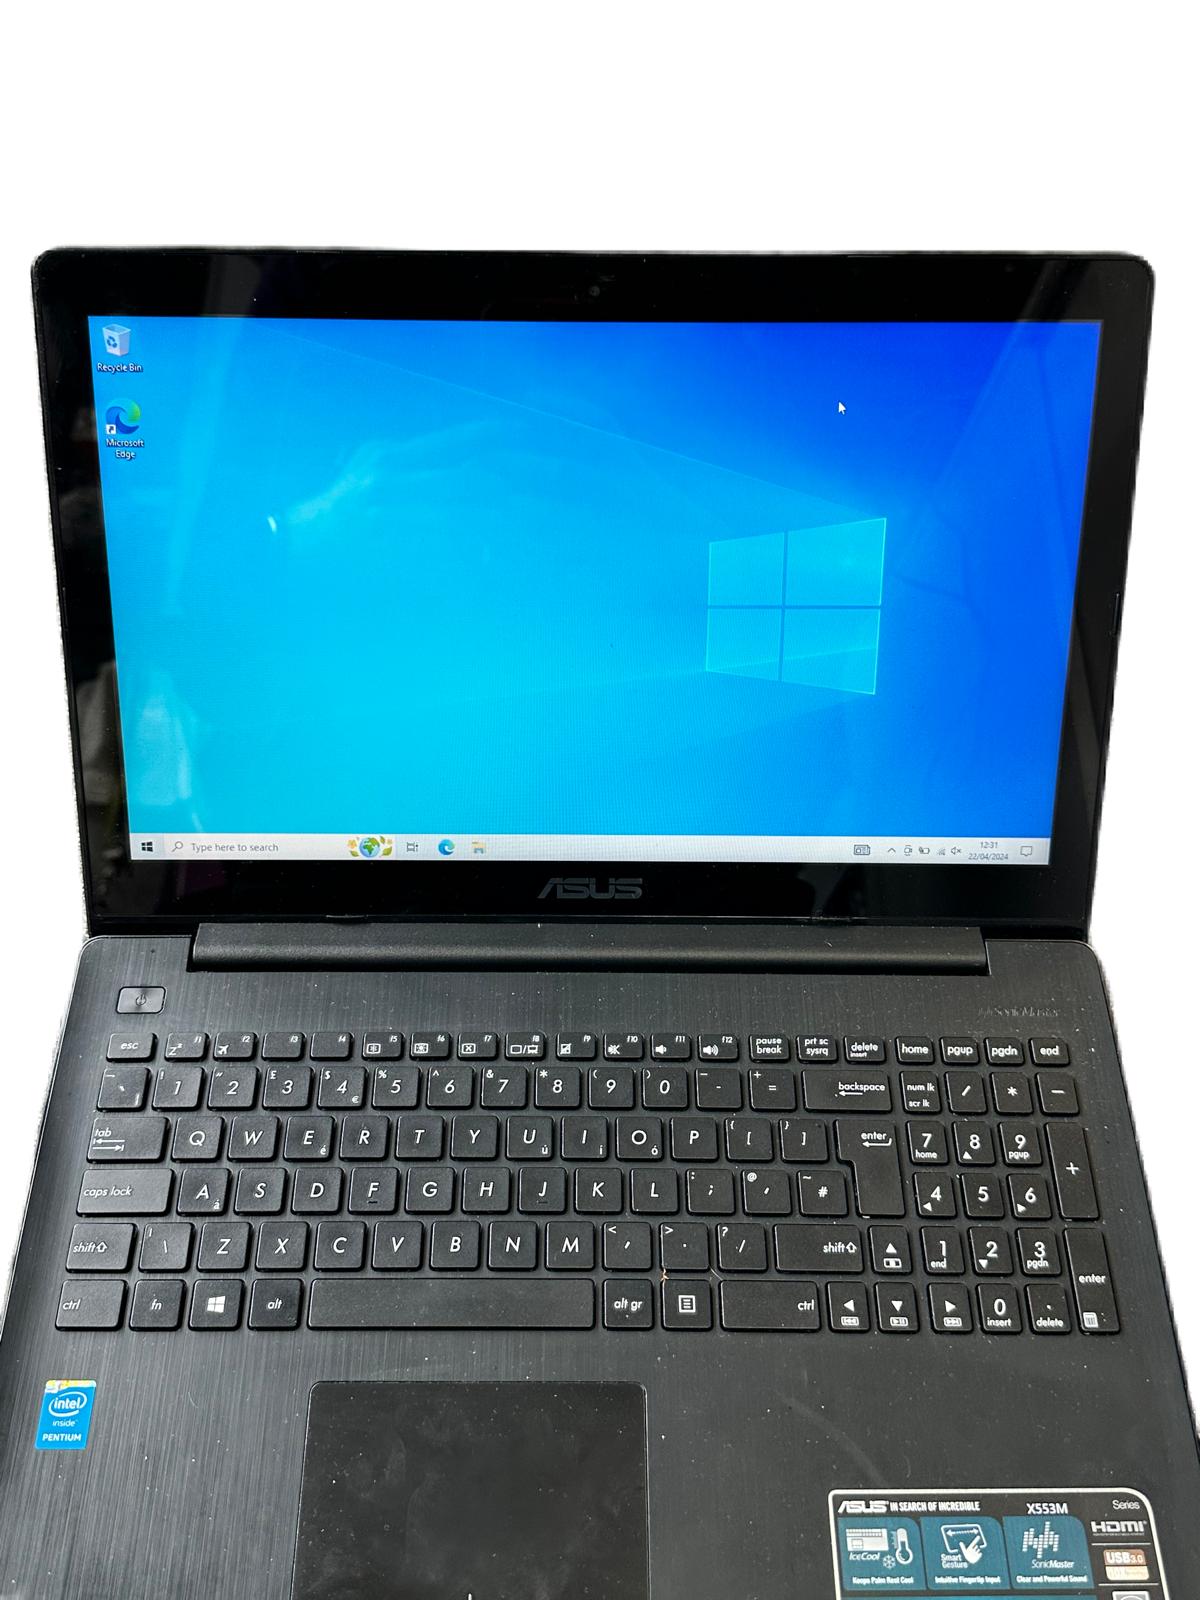 Asus X553M Laptop Unboxed intel pentium 4GB RAM 1TB HDD